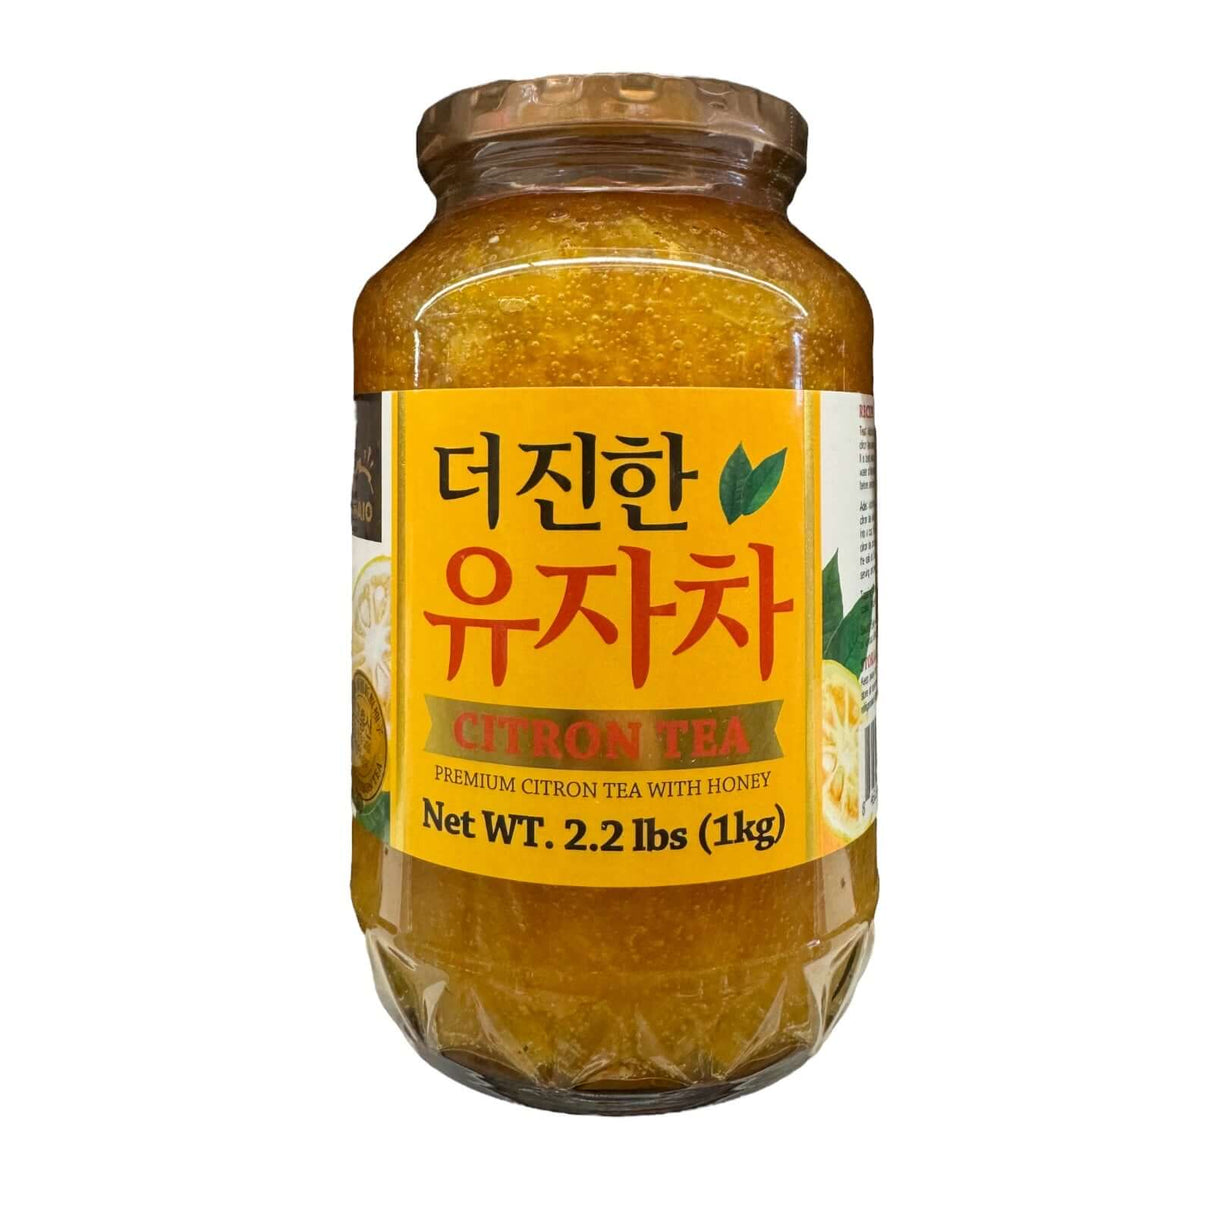 Haio Premium Citron Tea with Honey